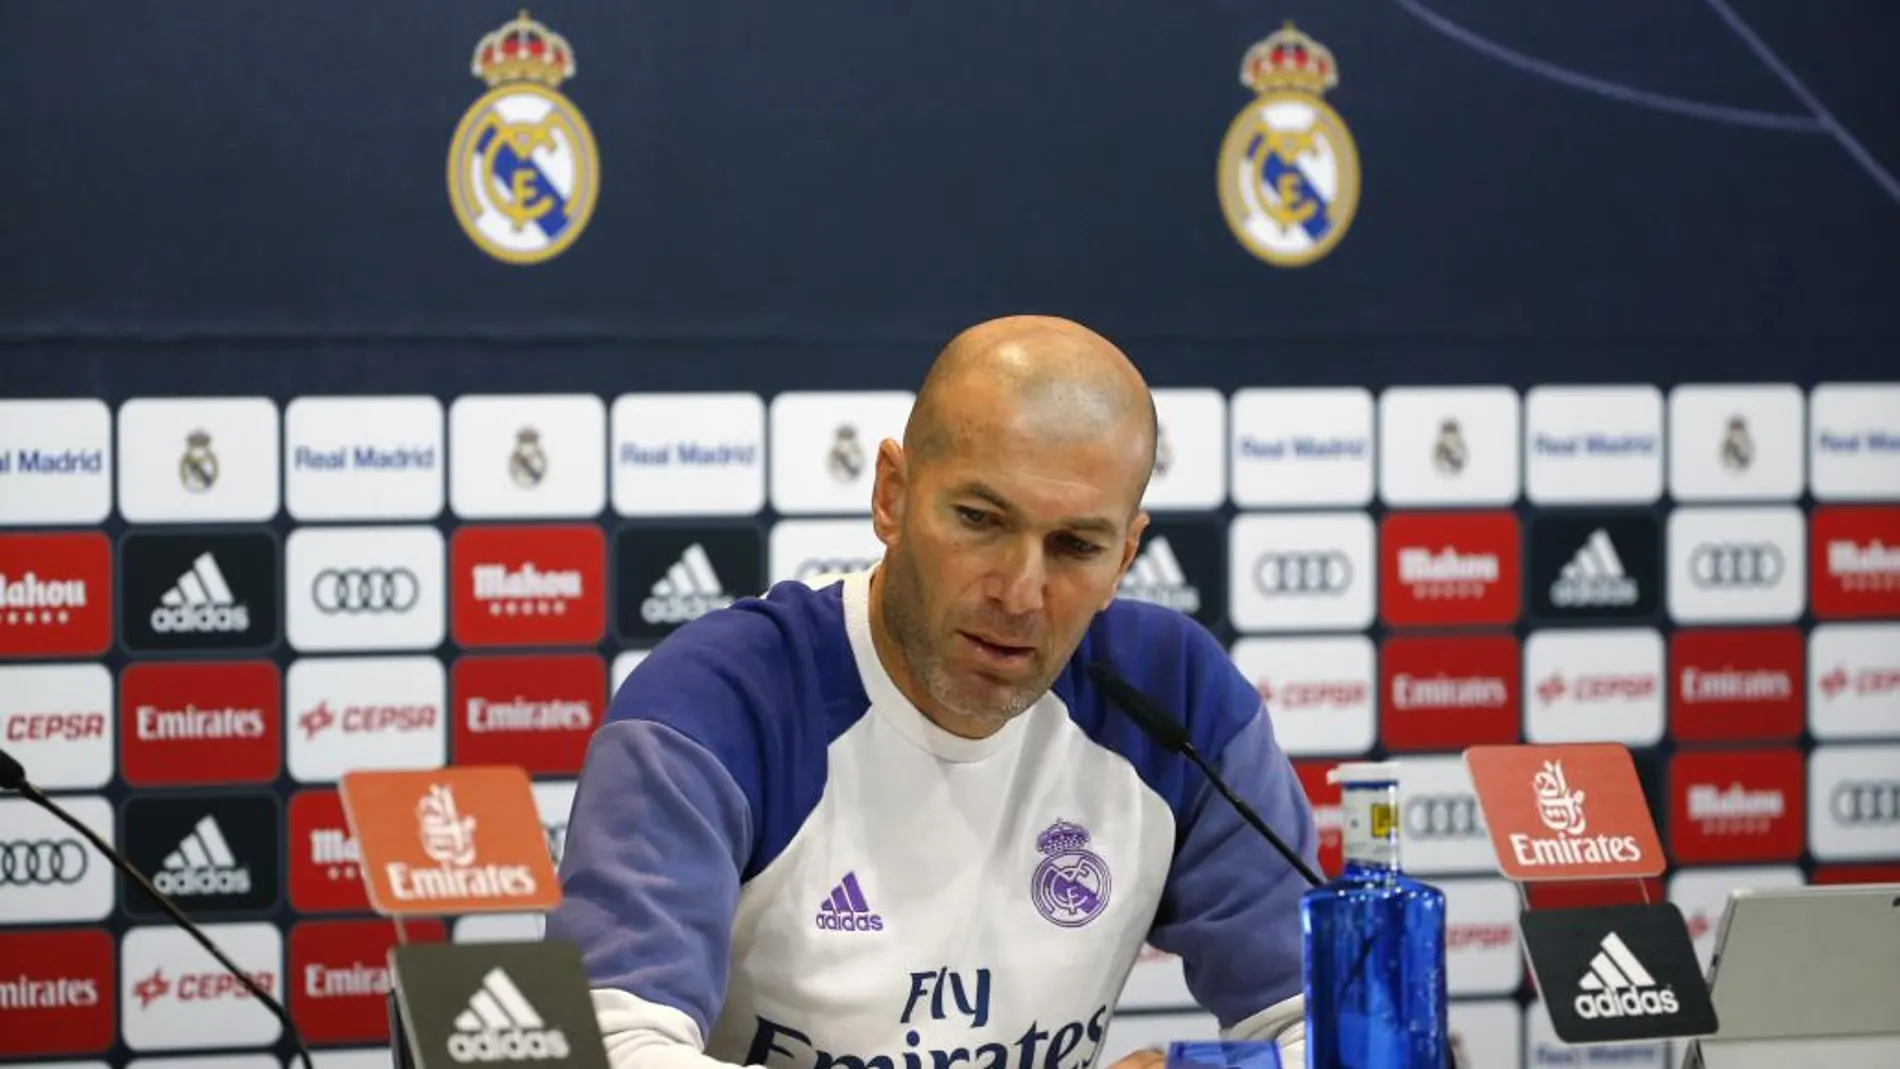 El técnico francés del Real Madrid Zinedine Zidane, durante la rueda de prensa.